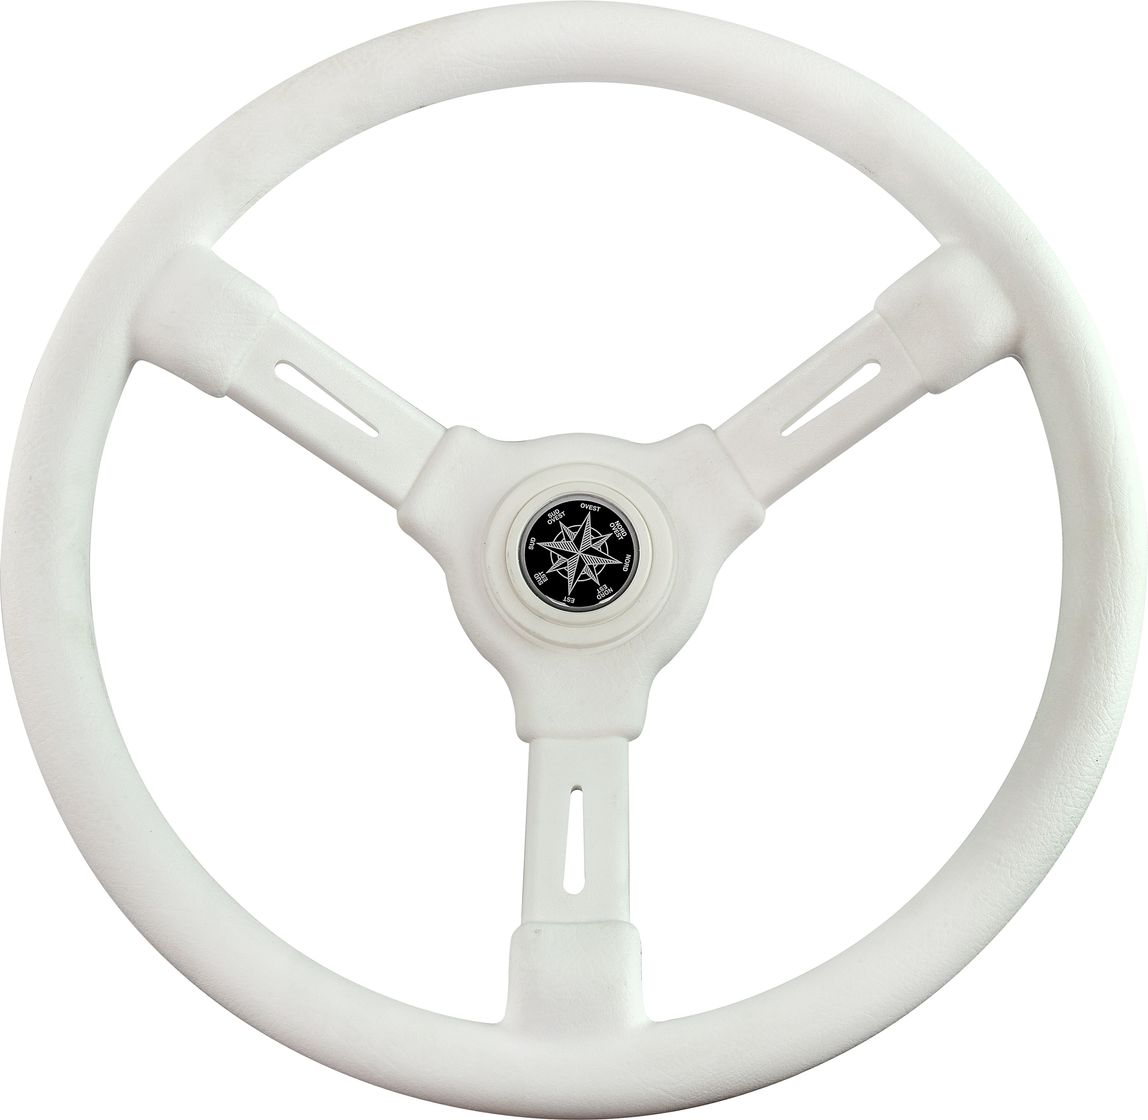 Рулевое колесо RIVIERA белый обод и спицы д. 350 мм VN8001-08 рулевое колесо leader plast белый обод серебряные спицы д 330 мм vn8330 08